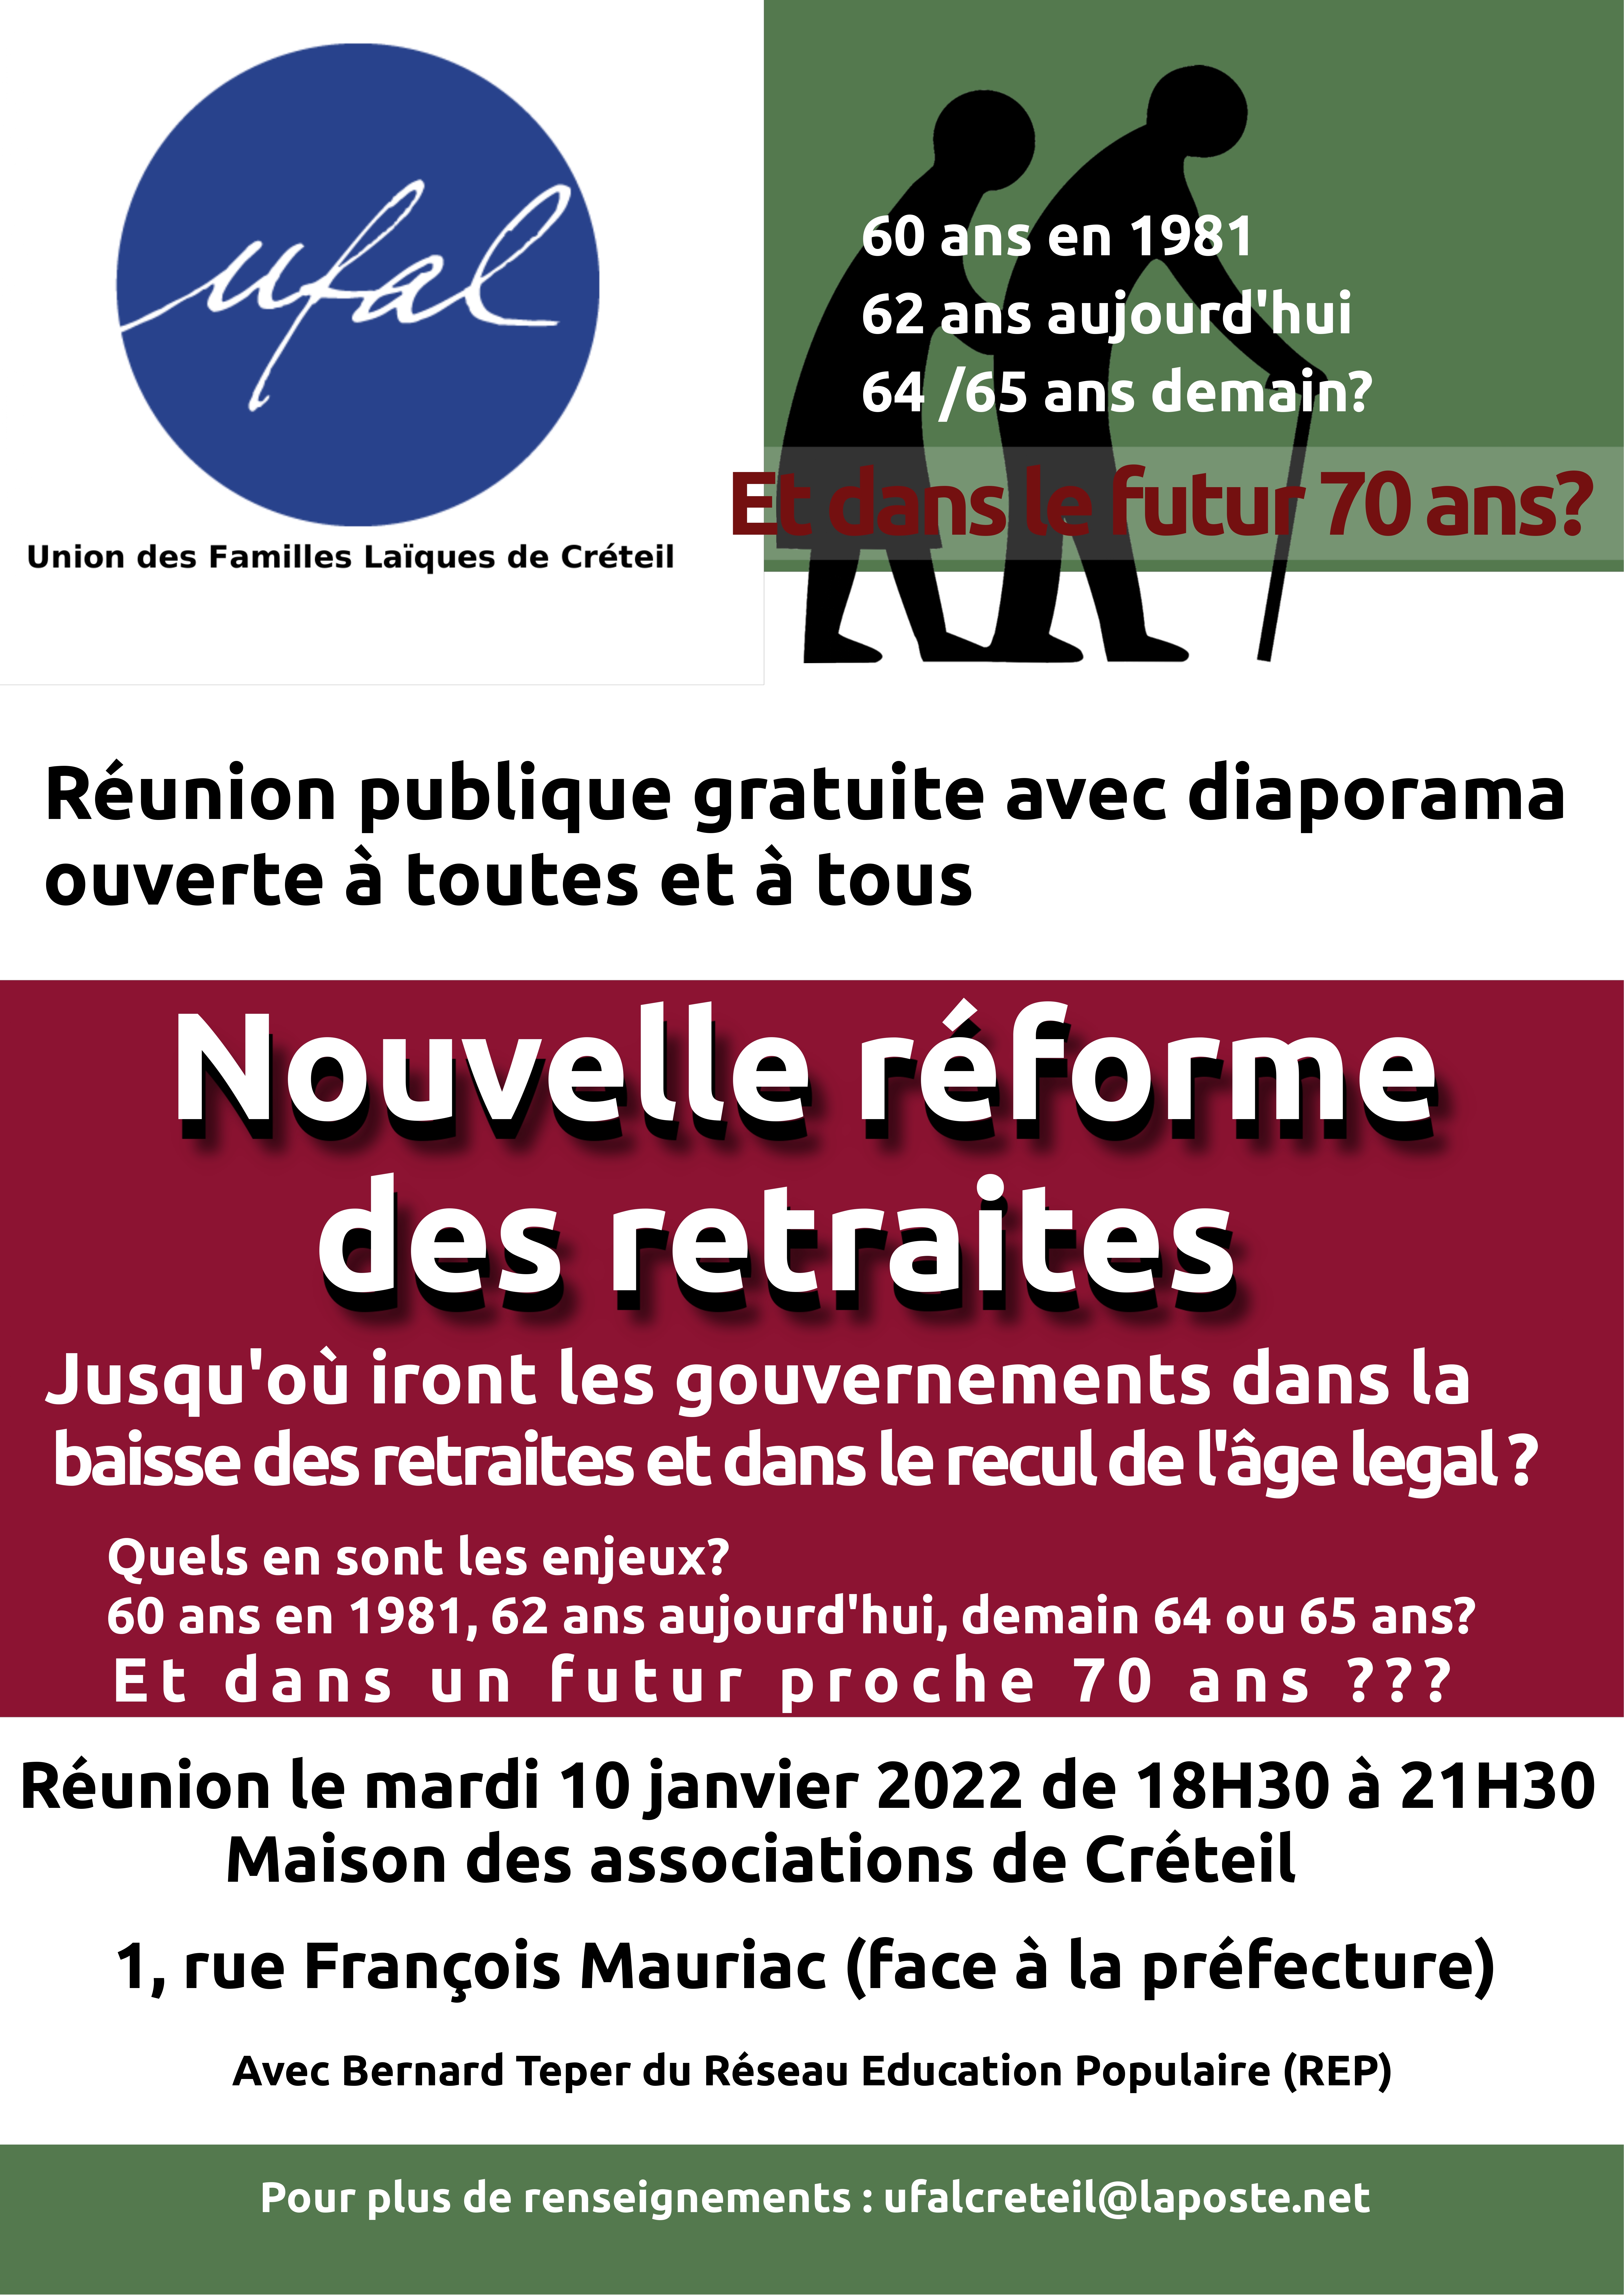 [Ufal Créteil] Retraites : réunion publique 10 janvier 18h30 @ Maison des associations de Créteil